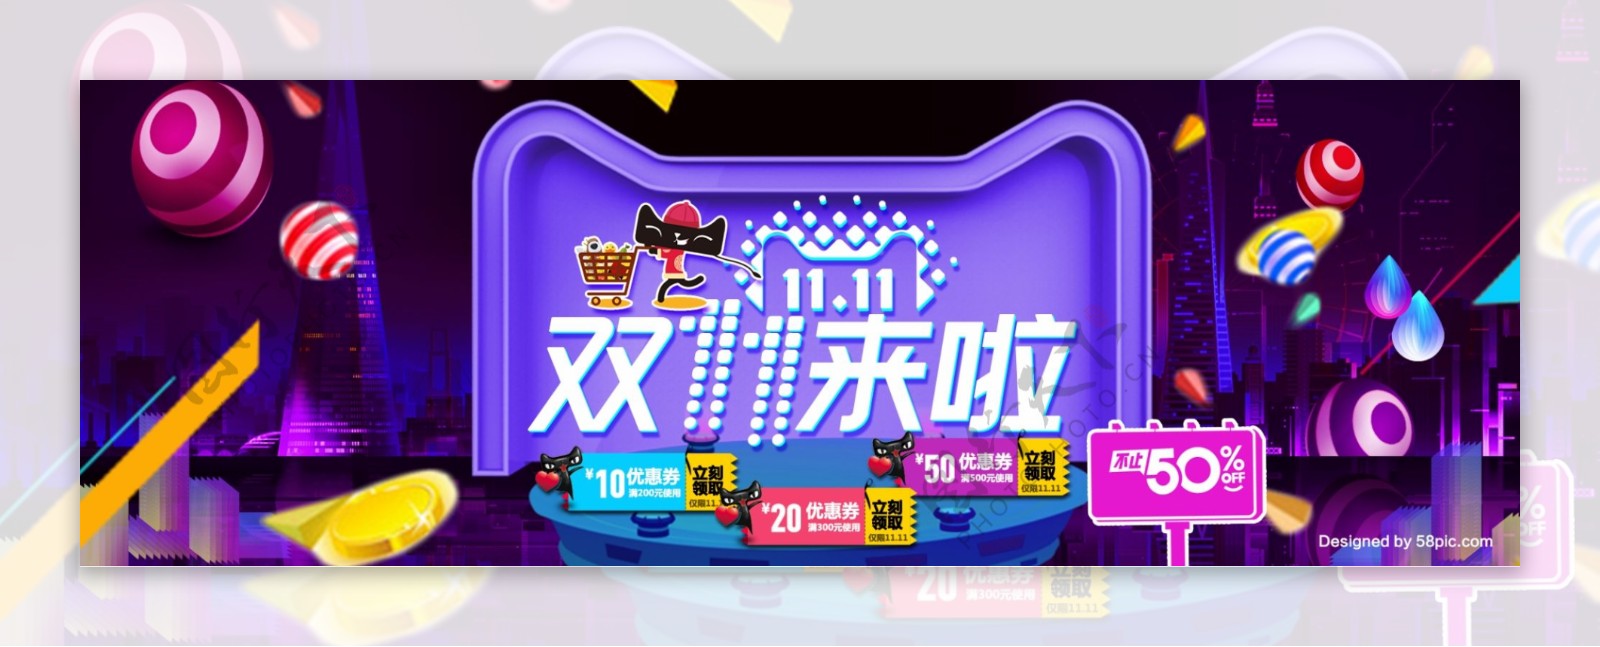 紫色炫酷2017双11淘宝电商海报模板双十一banner海报